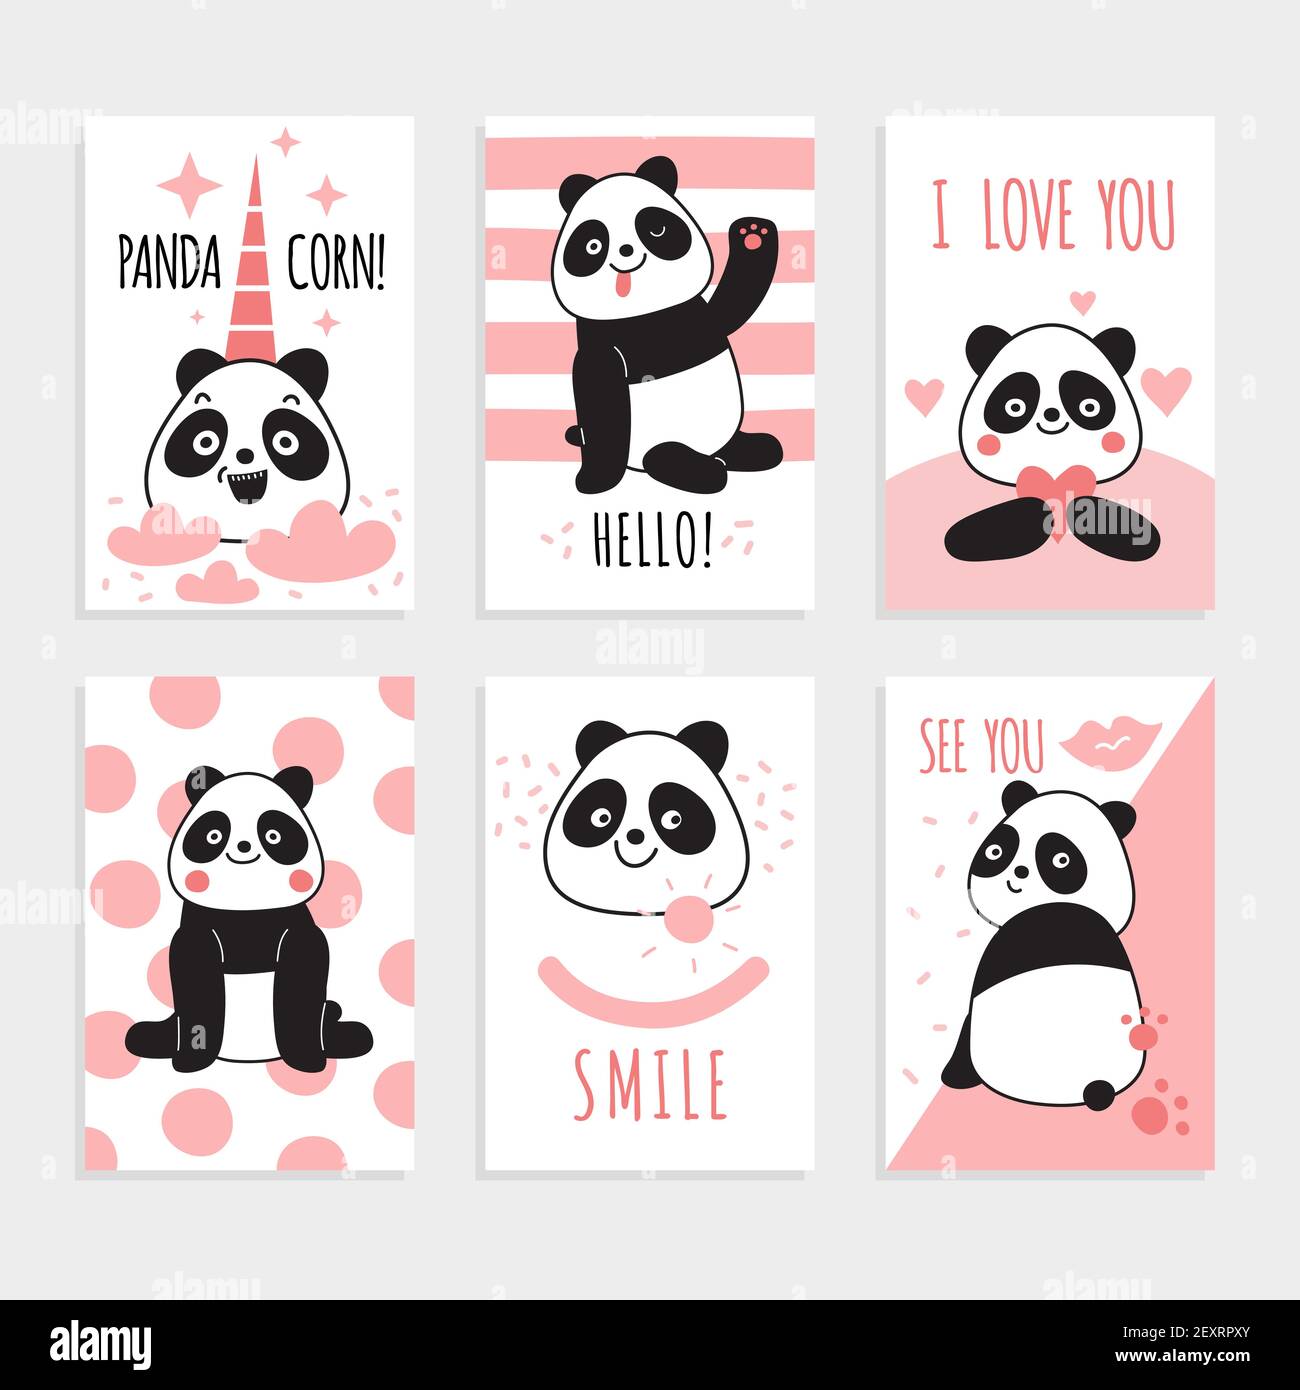 Panda-Karten. Niedliche chinesische Bären, fröhlicher Panda mit magischen Accessoires, Geburtstagsfeiern Einladungen. Farbenfroher Druck Cartoon Vektor-Set. Panda Charakter auf Karte, tragen Säugetier lustige Illustration Stock Vektor